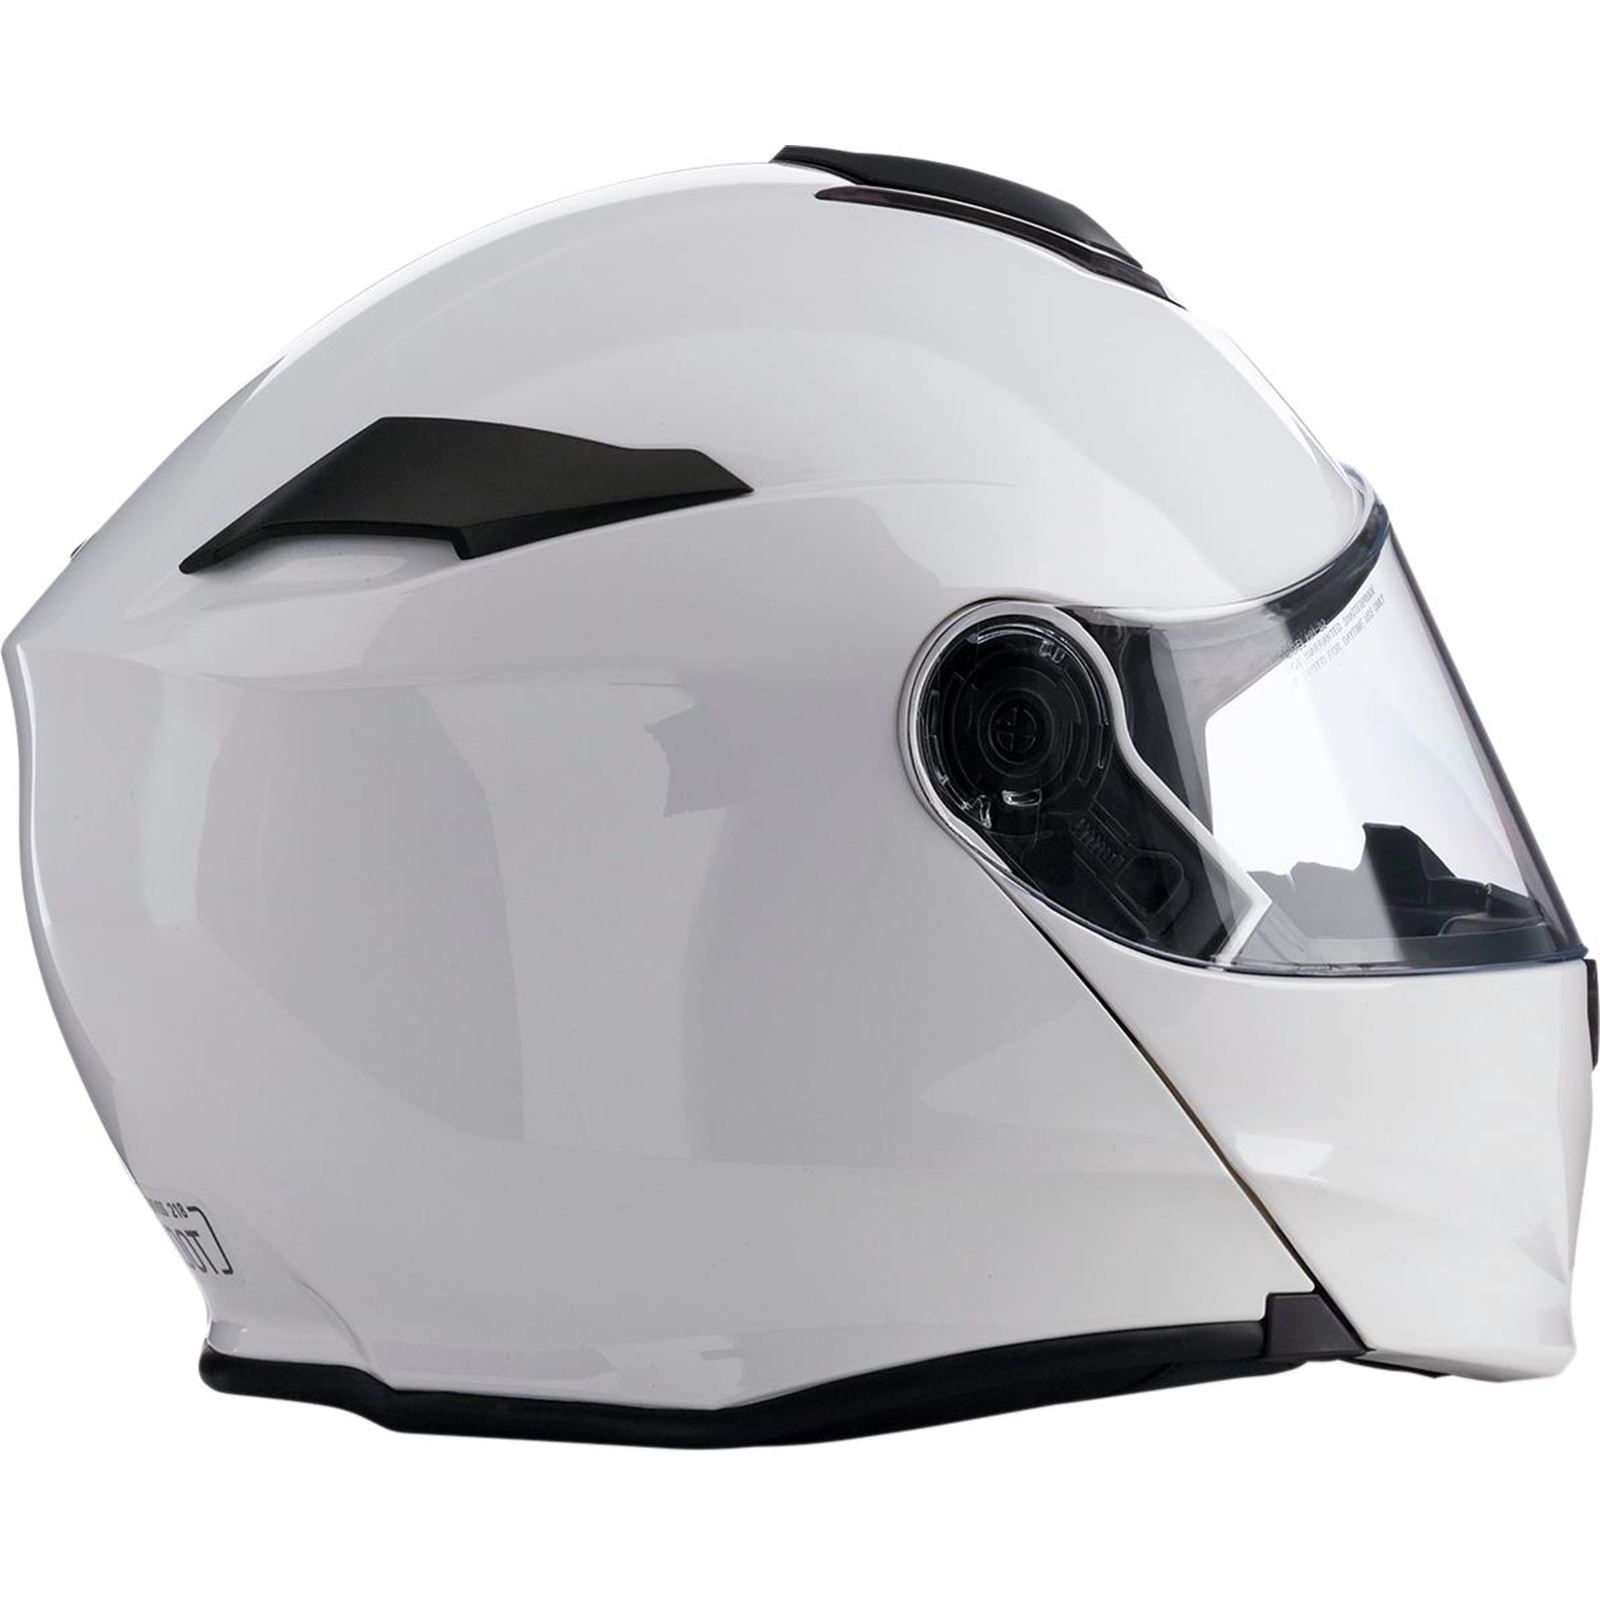 Z1R Solaris Helmet - White